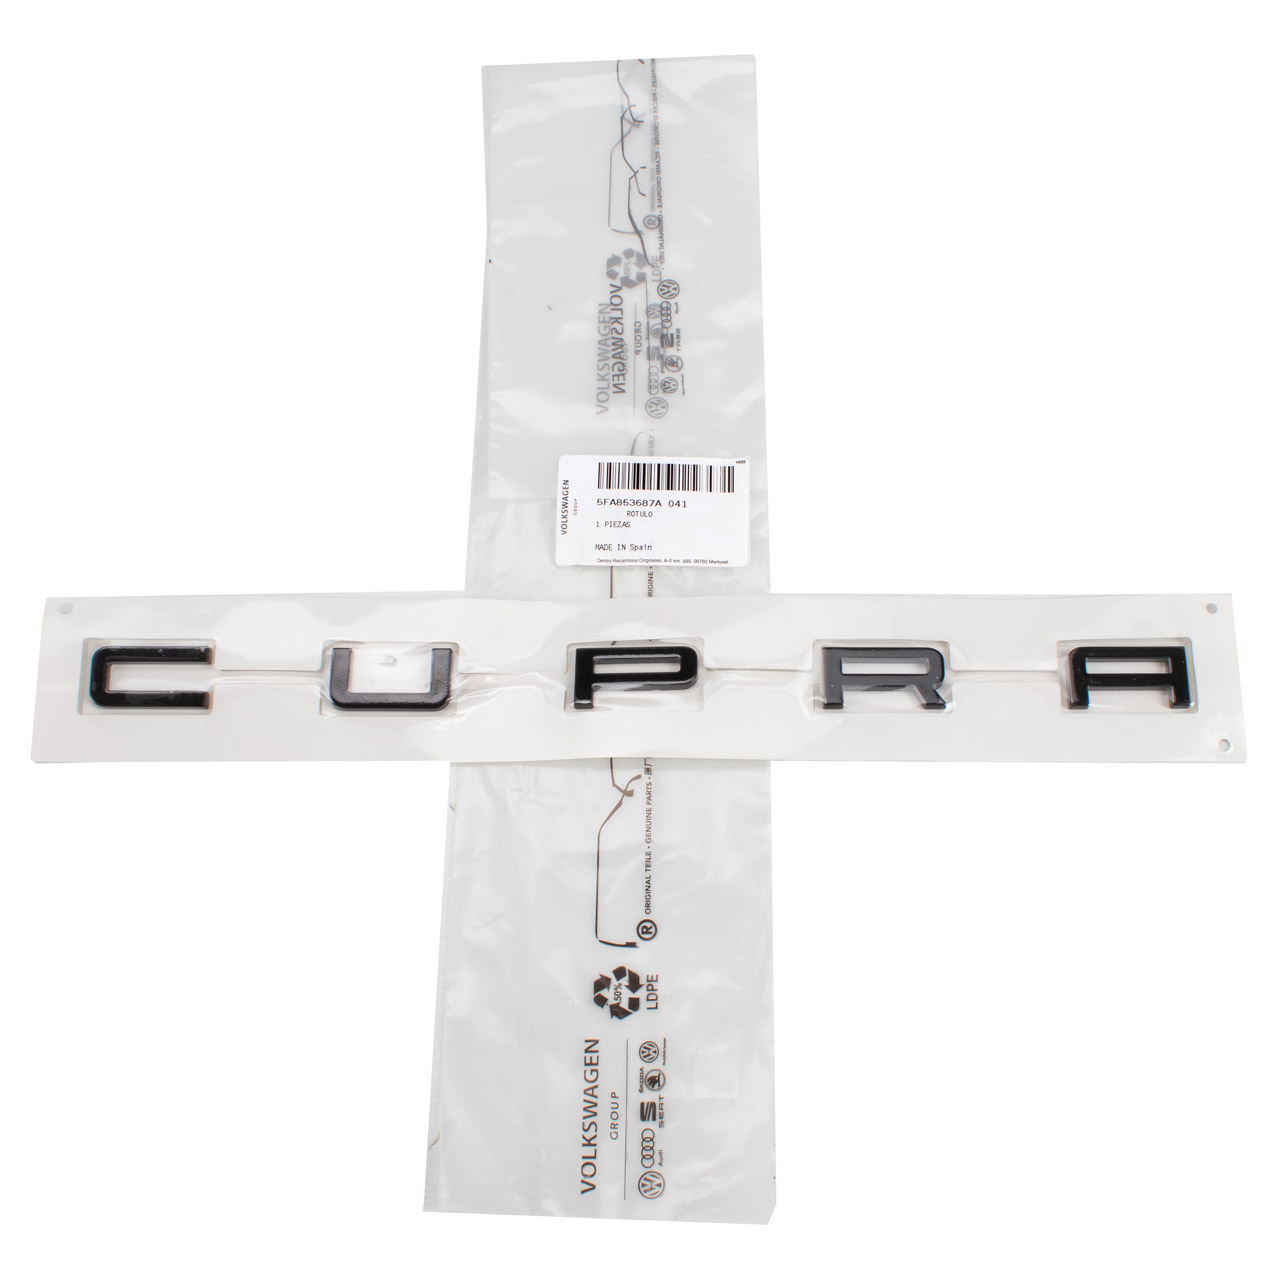 ORIGINAL Cupra Emblem Schriftzug CUPRA Schwarz Formentor Leon hinten 5FA853687A 041